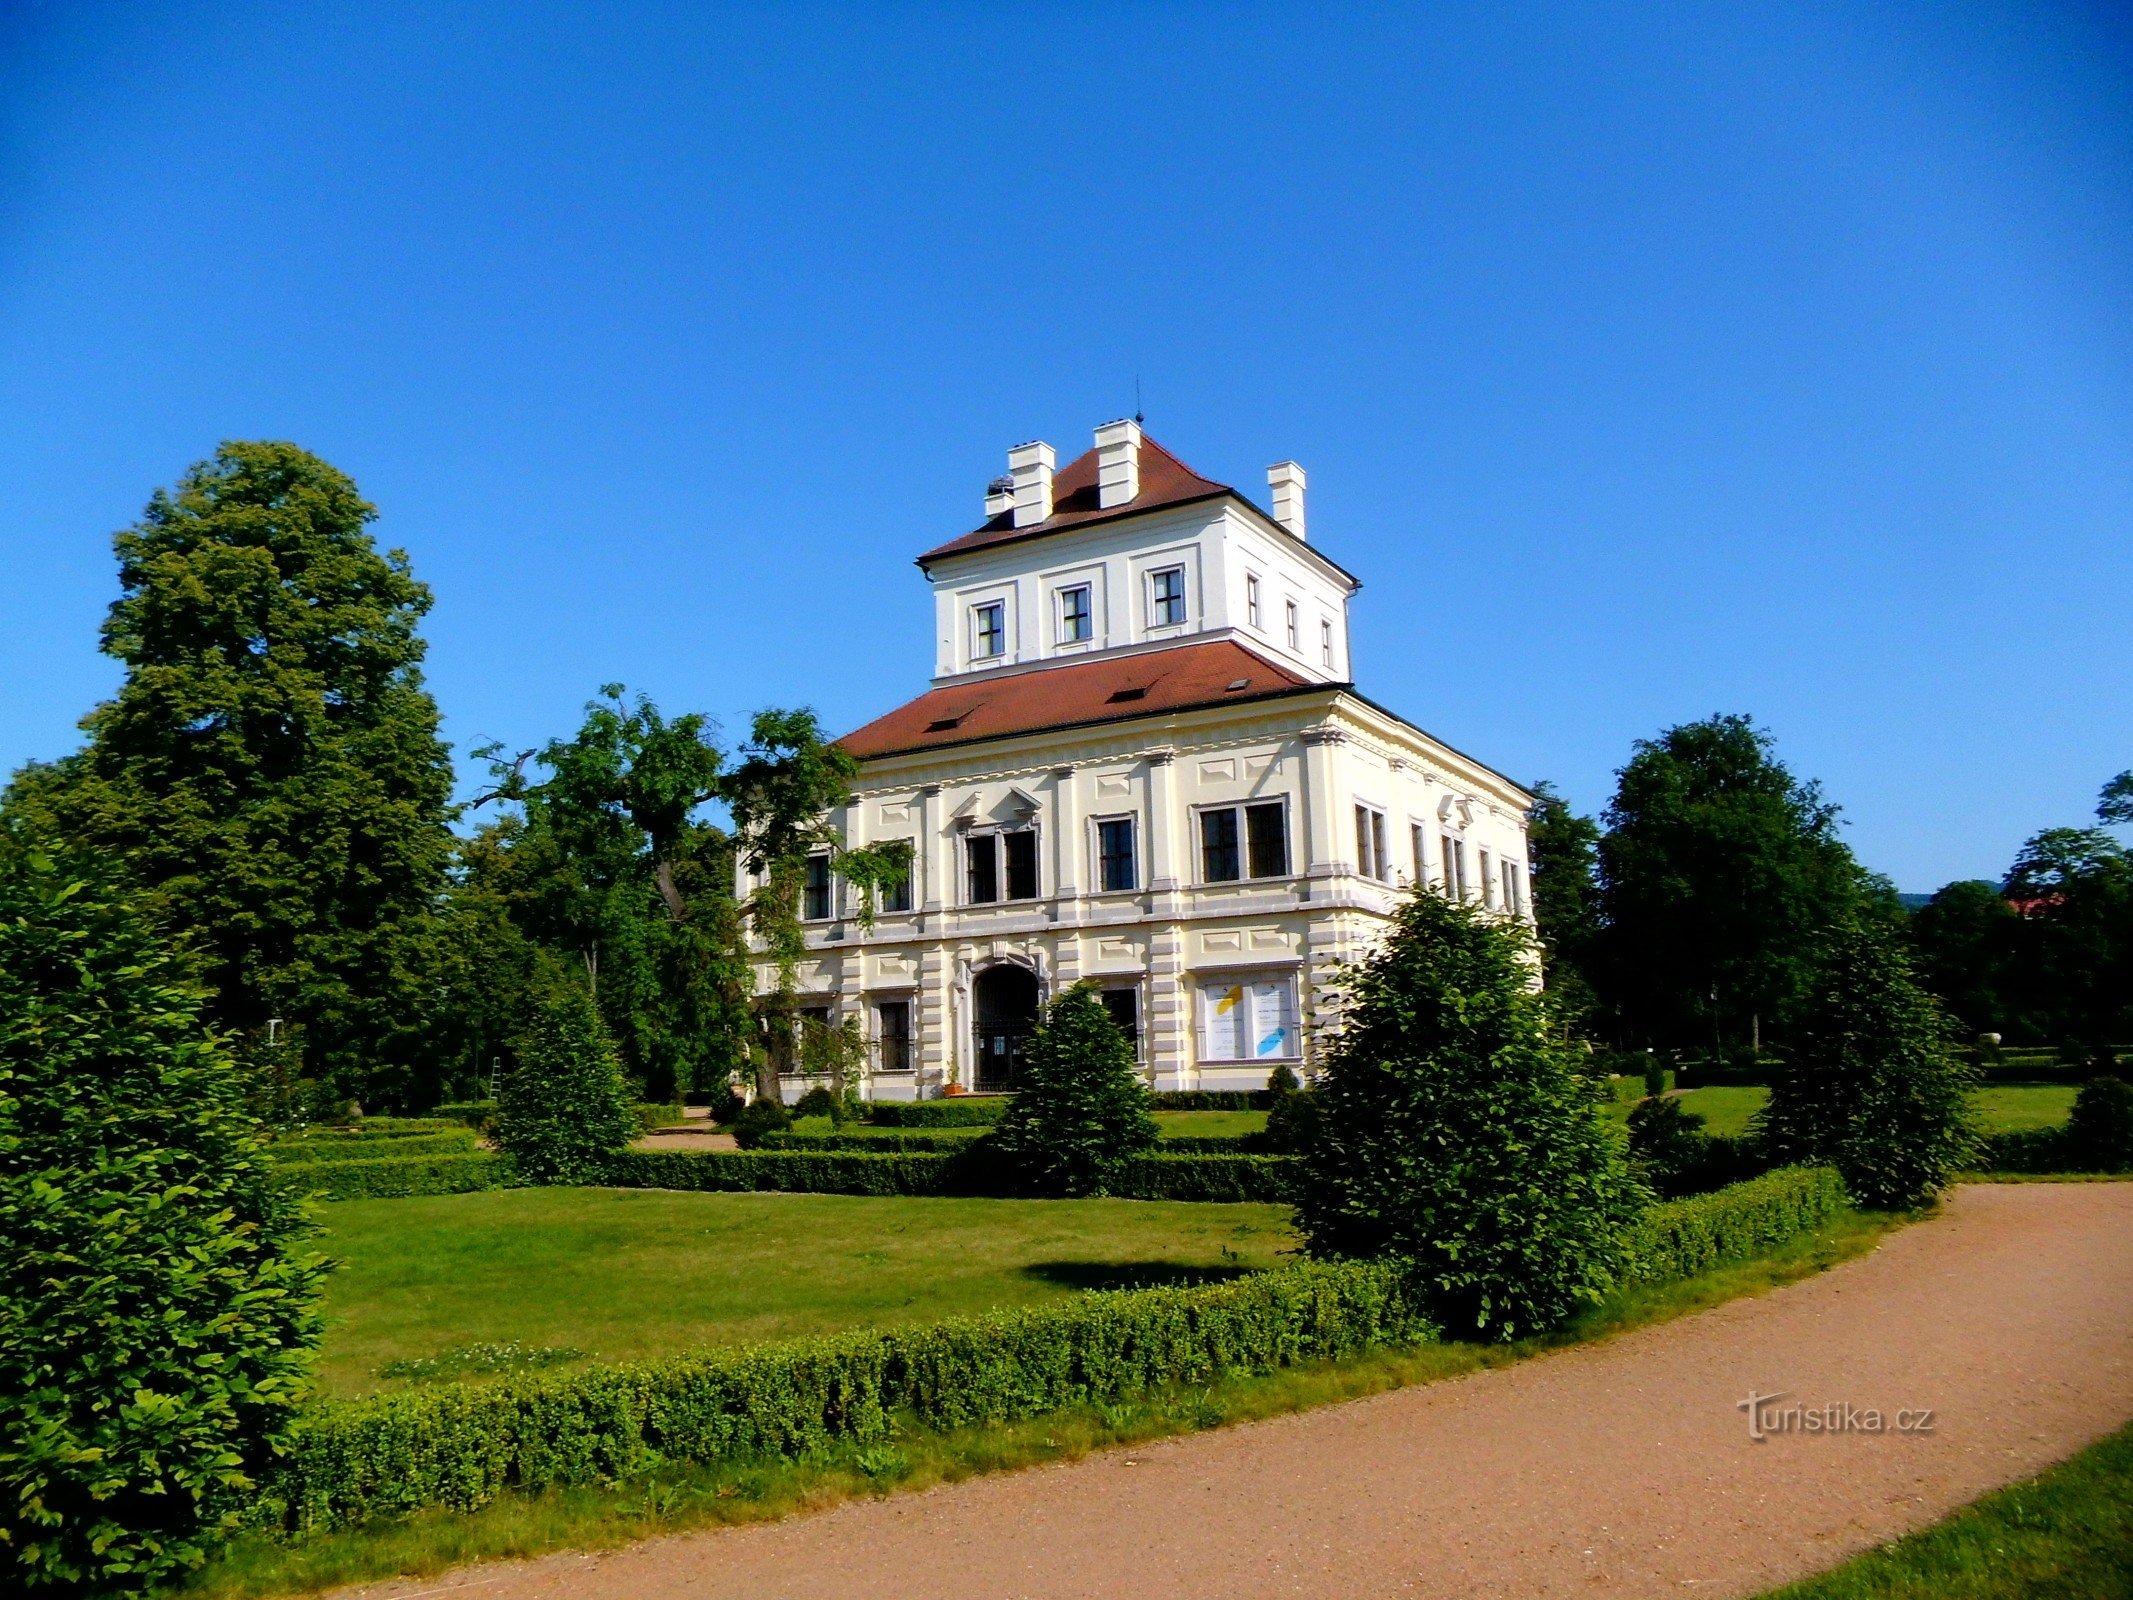 En promenad genom Ostrov nad Ohří slottspark